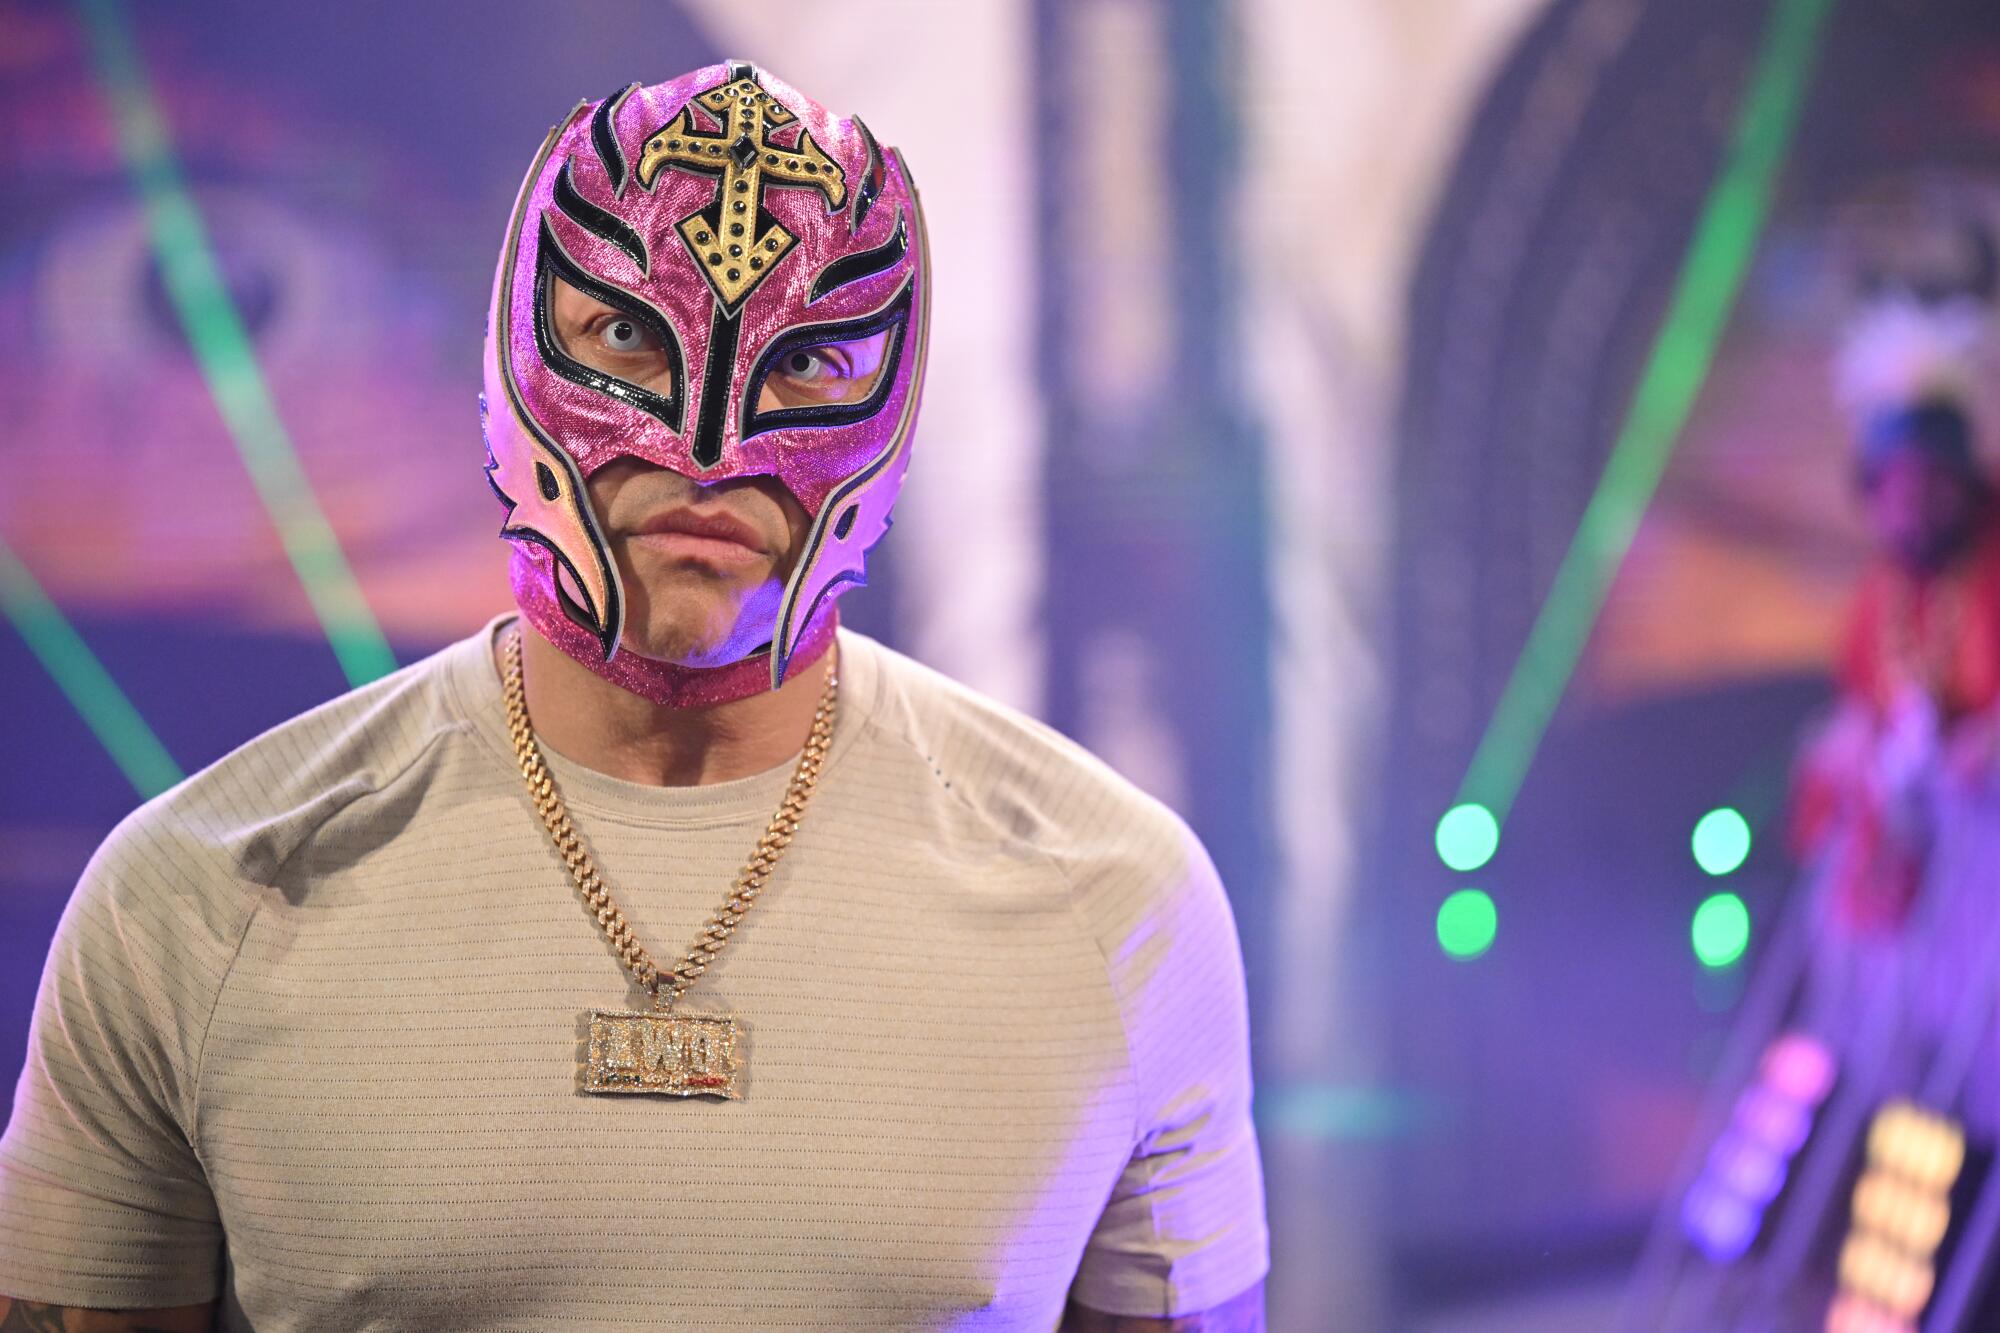 Rey Mysterio ingresará al Salón de la Fama de WWE este viernes.